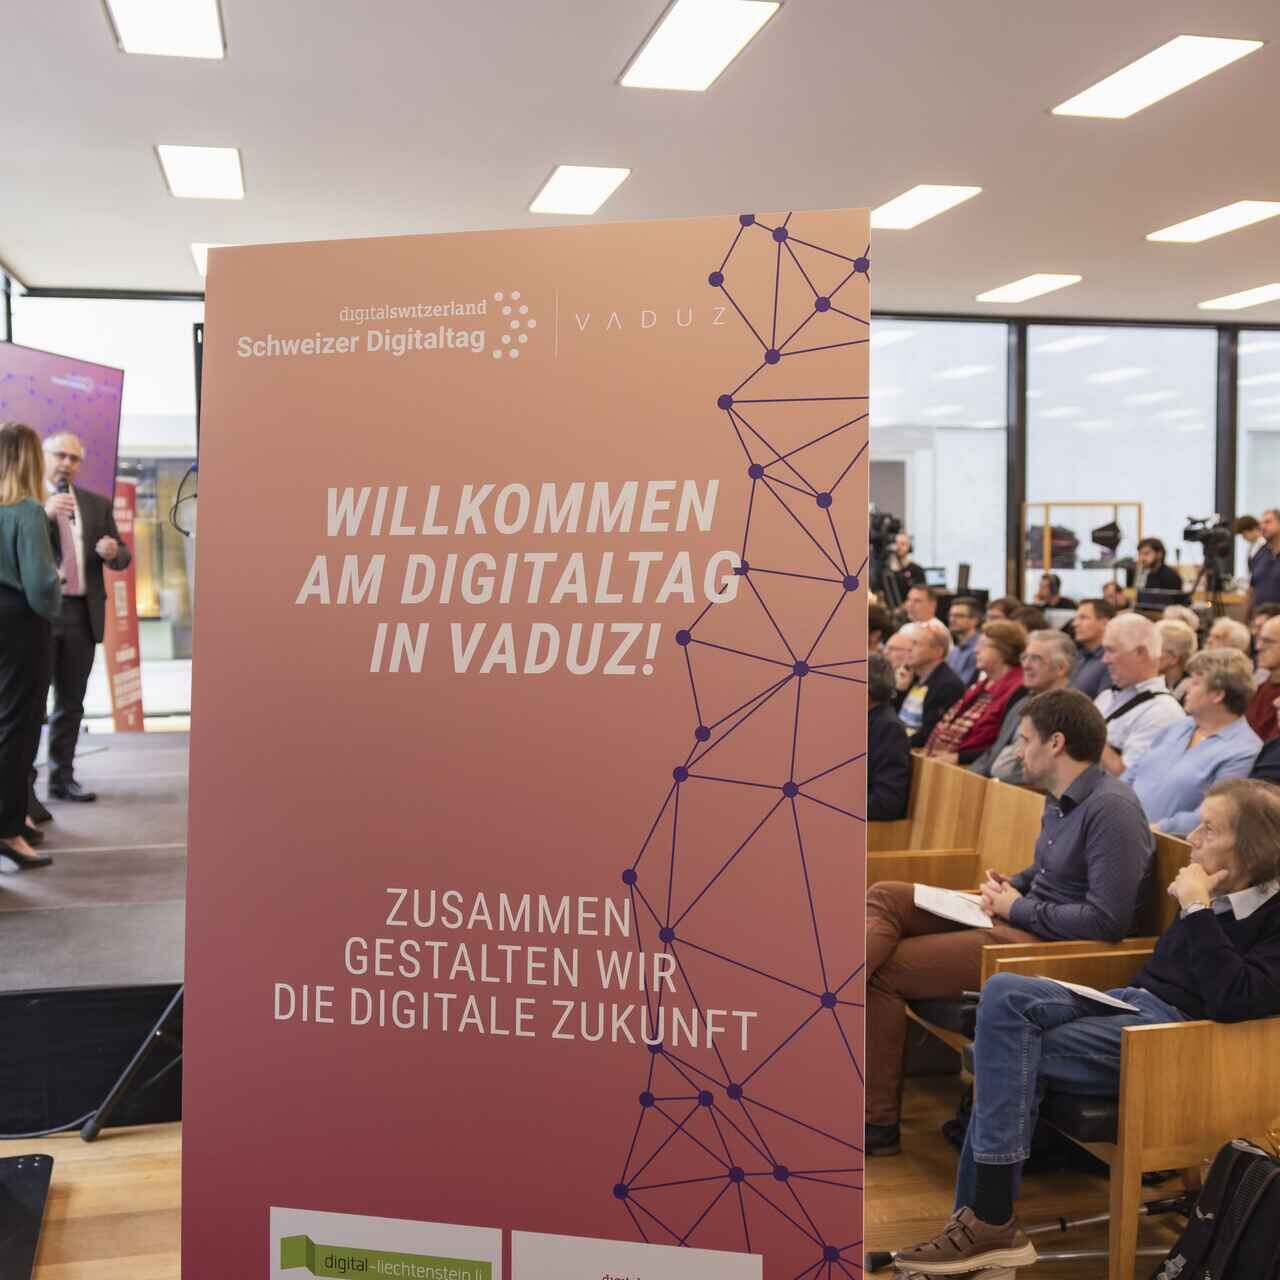 Laupäeval, 15. oktoobril 2022 võttis Liechtensteini Vürstiriigi pealinna Kunstmuseum vastu "Digitaltag Vaduzi"